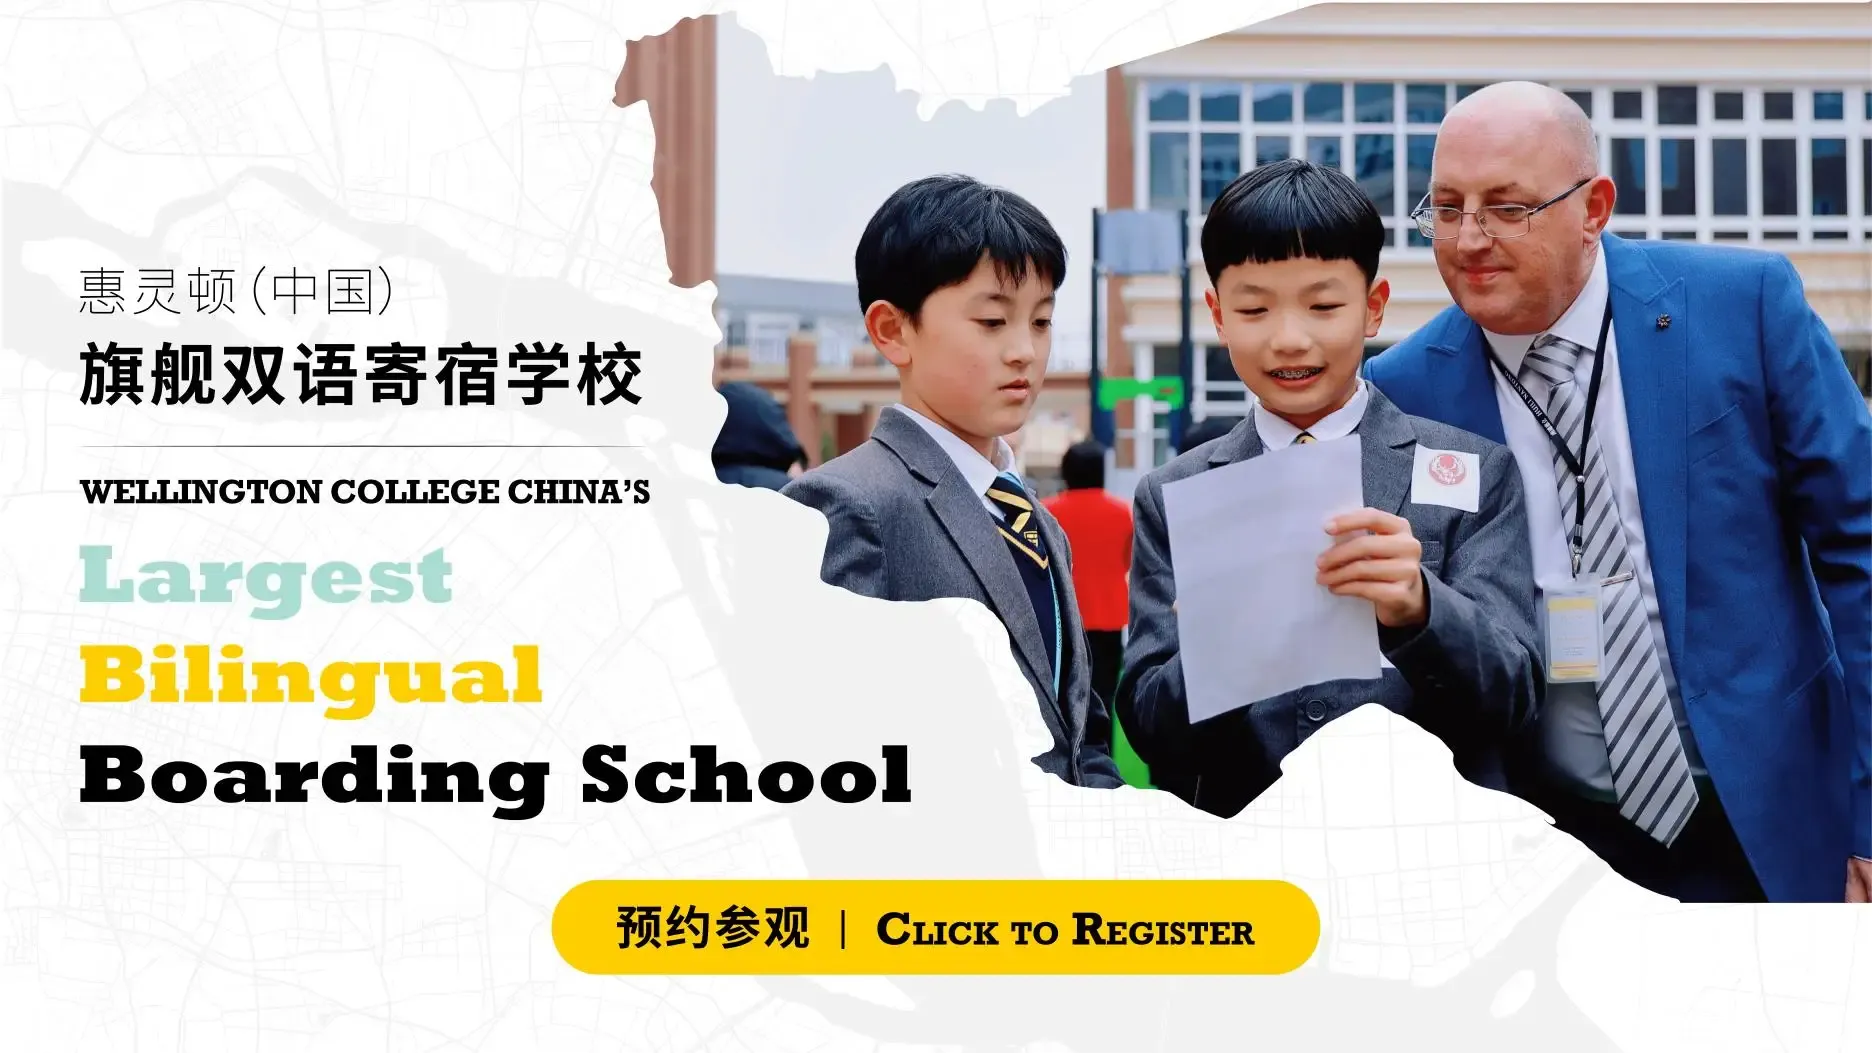 Nantong Boarding School Open Day